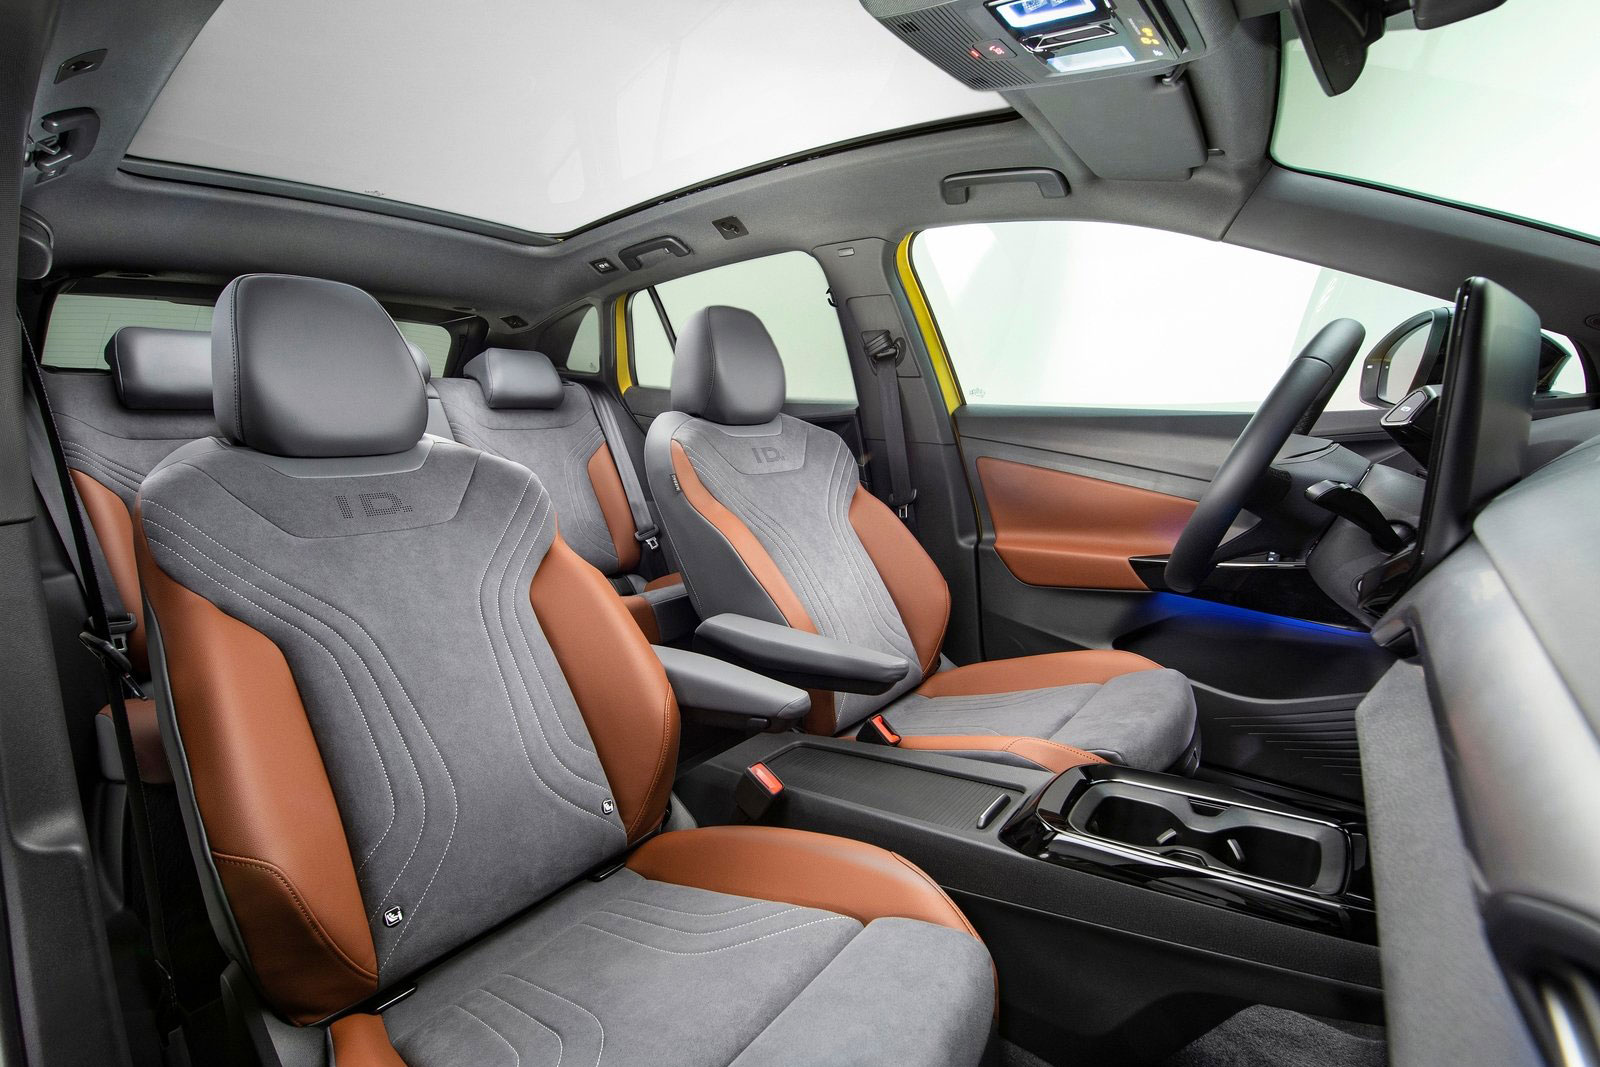 VW ID.4: Elektro-SUV für alle und Alternative zum Tesla Model Y?